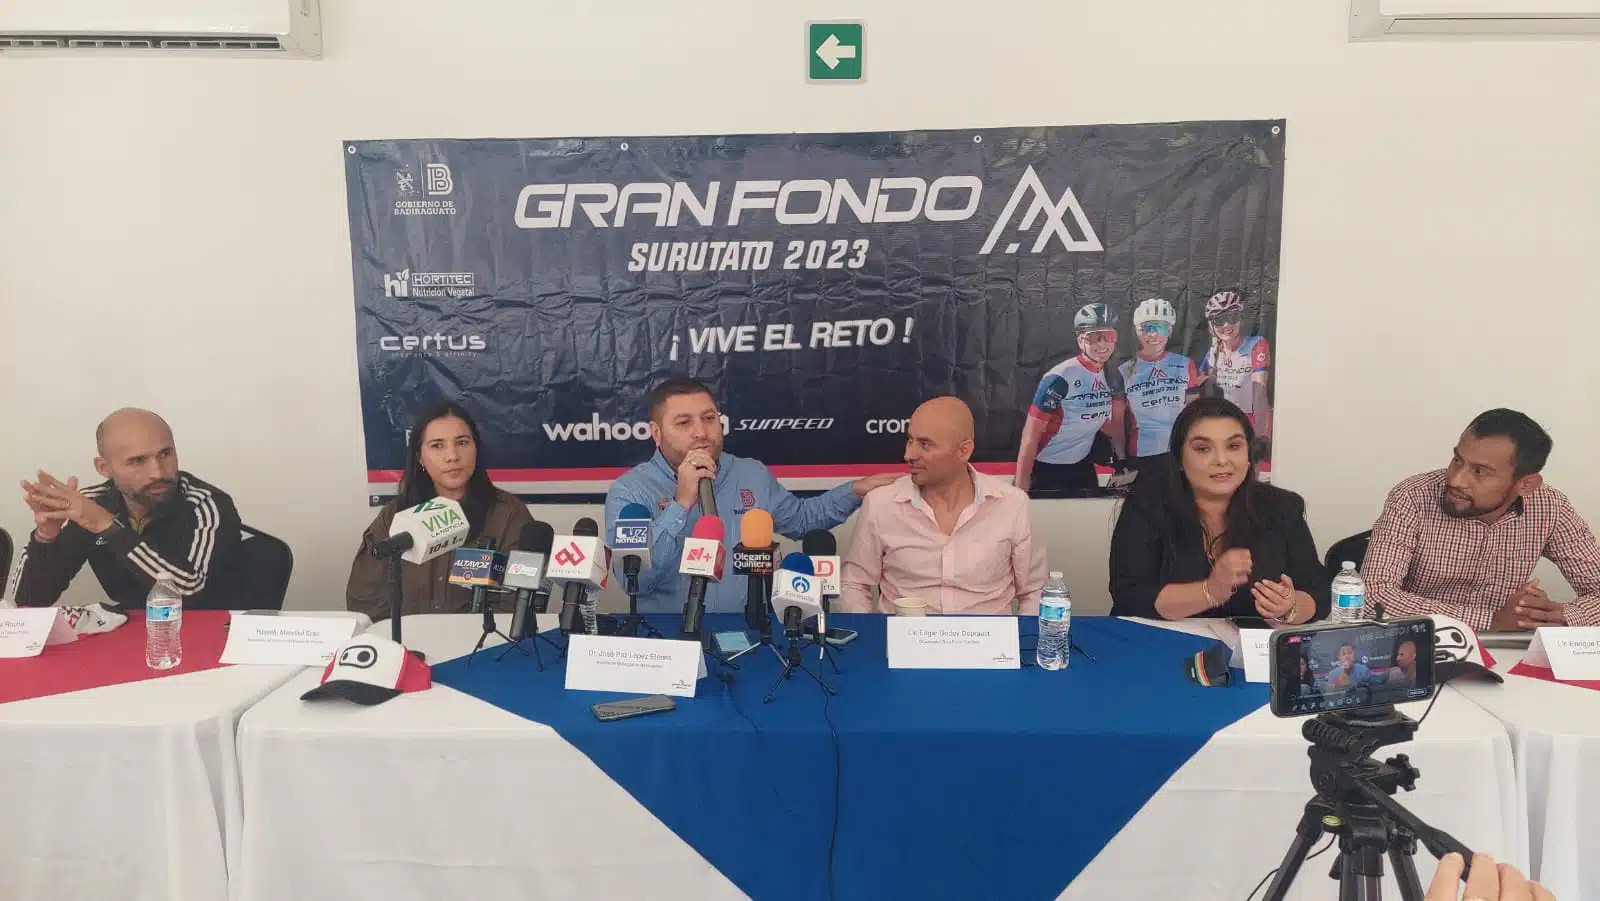 ¡Atención ciclistas! Invitan a participar en el “Gran fondo Surutato 2023” de 70 y 140 kilómetros